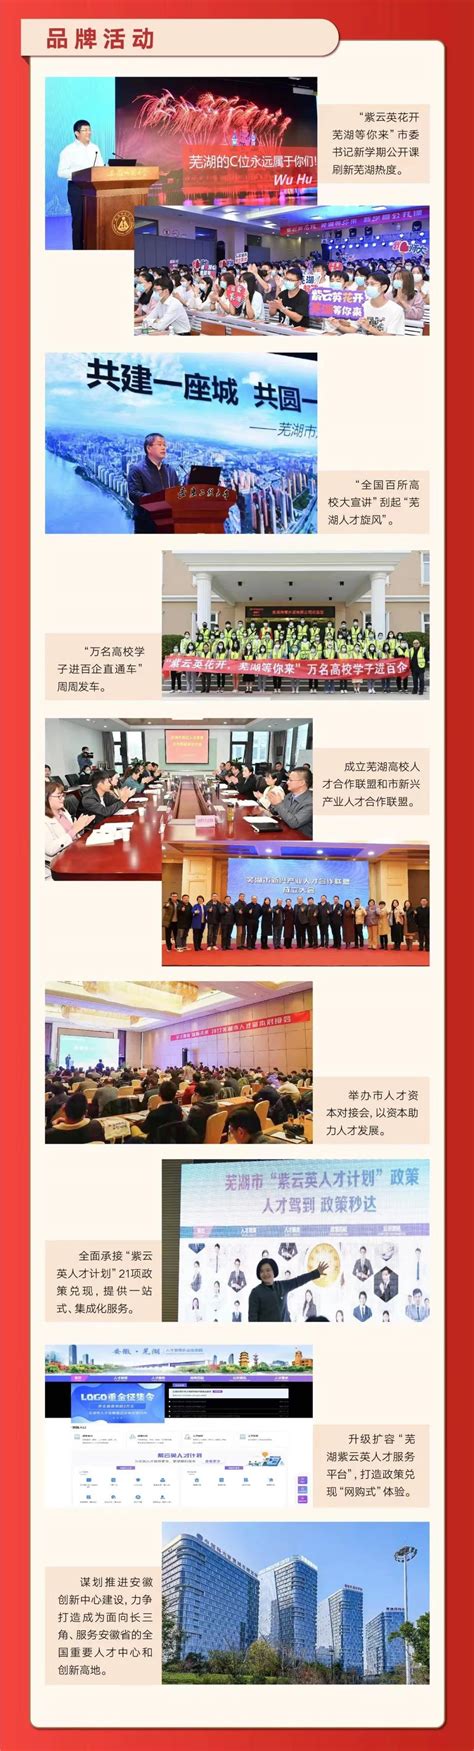 芜湖市人才发展集团新春招聘公告-安徽师范大学就业服务网